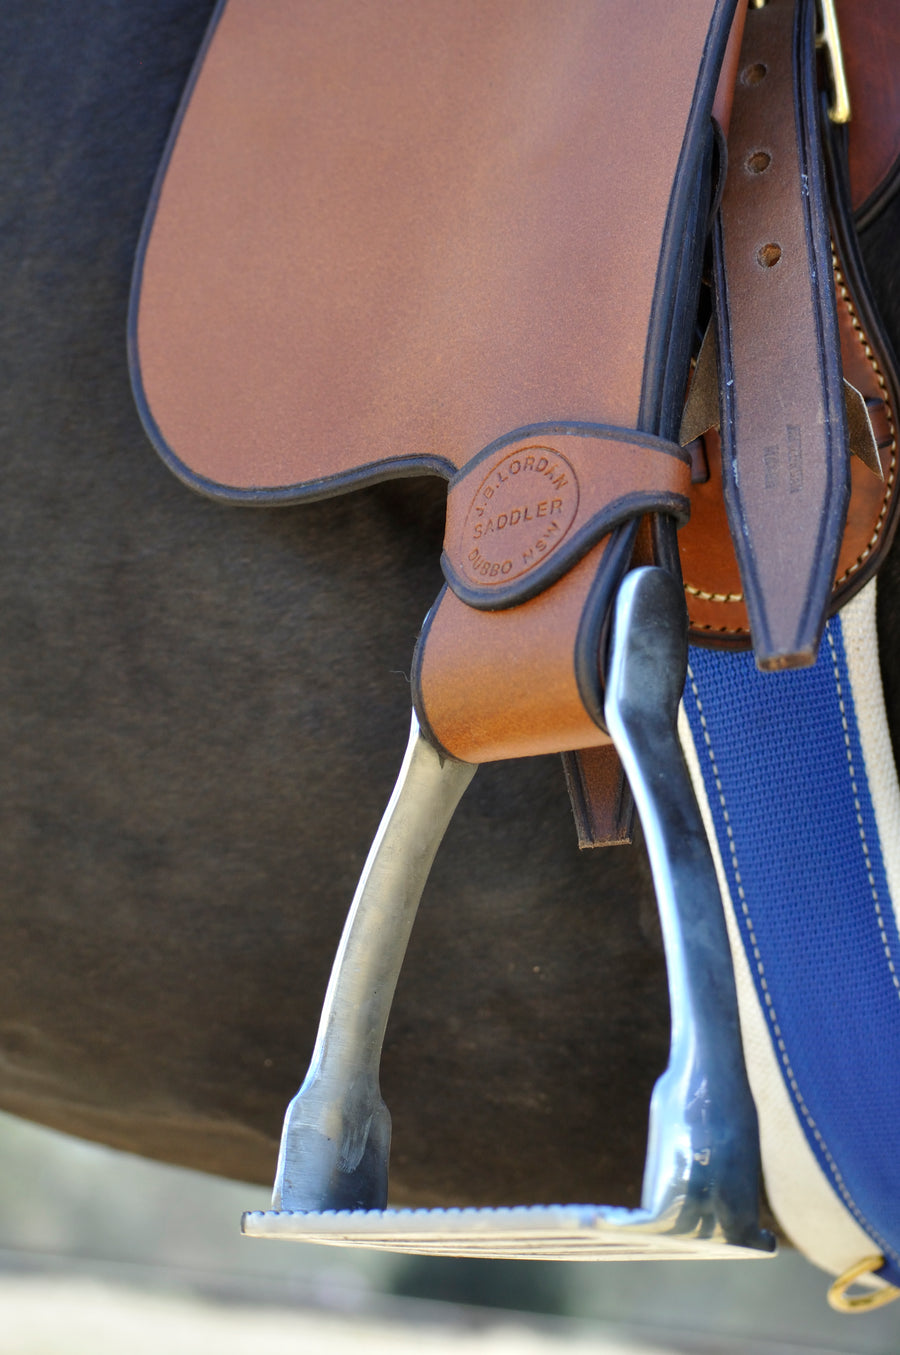 4 bar stirrup iron for stock saddle